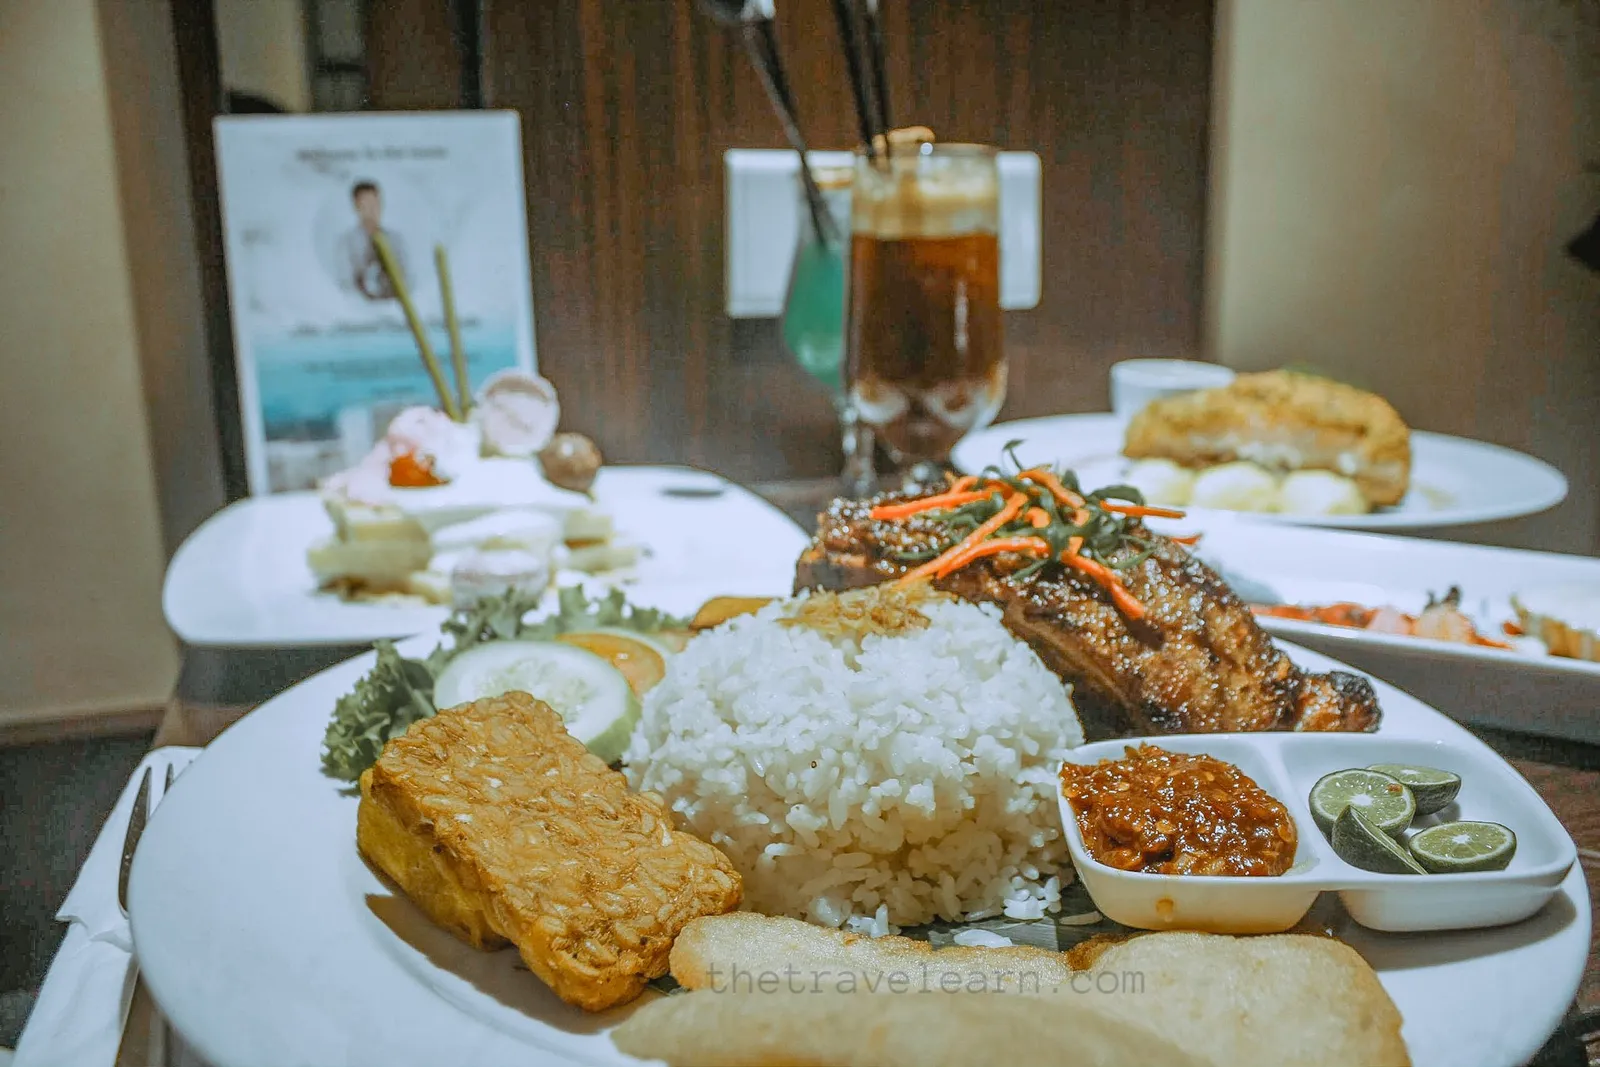 25 Rekomendasi Restoran All You Can Eat Murah di Bandung